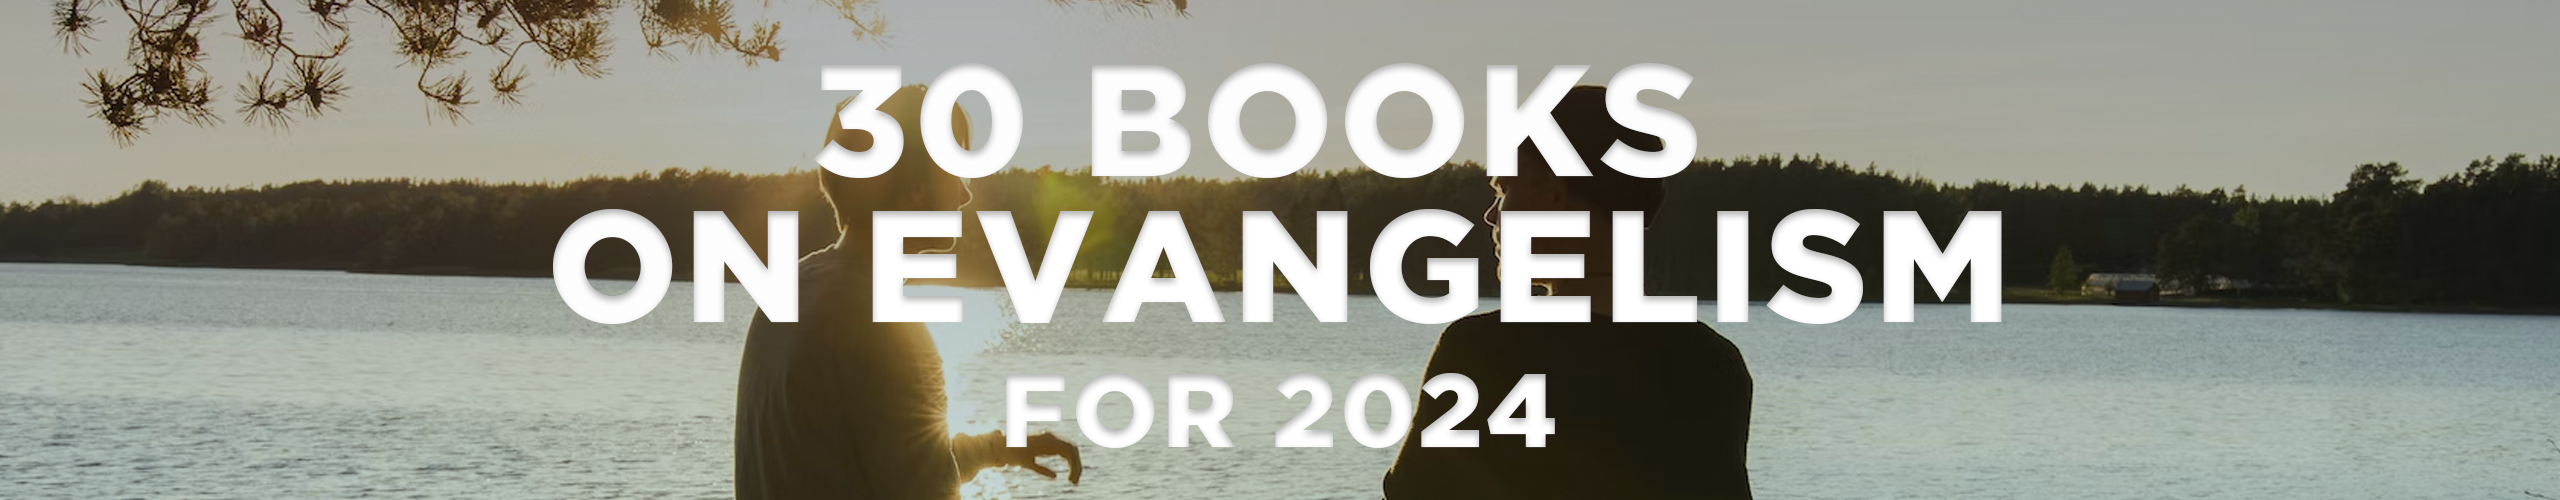 30-books-on-evangelism